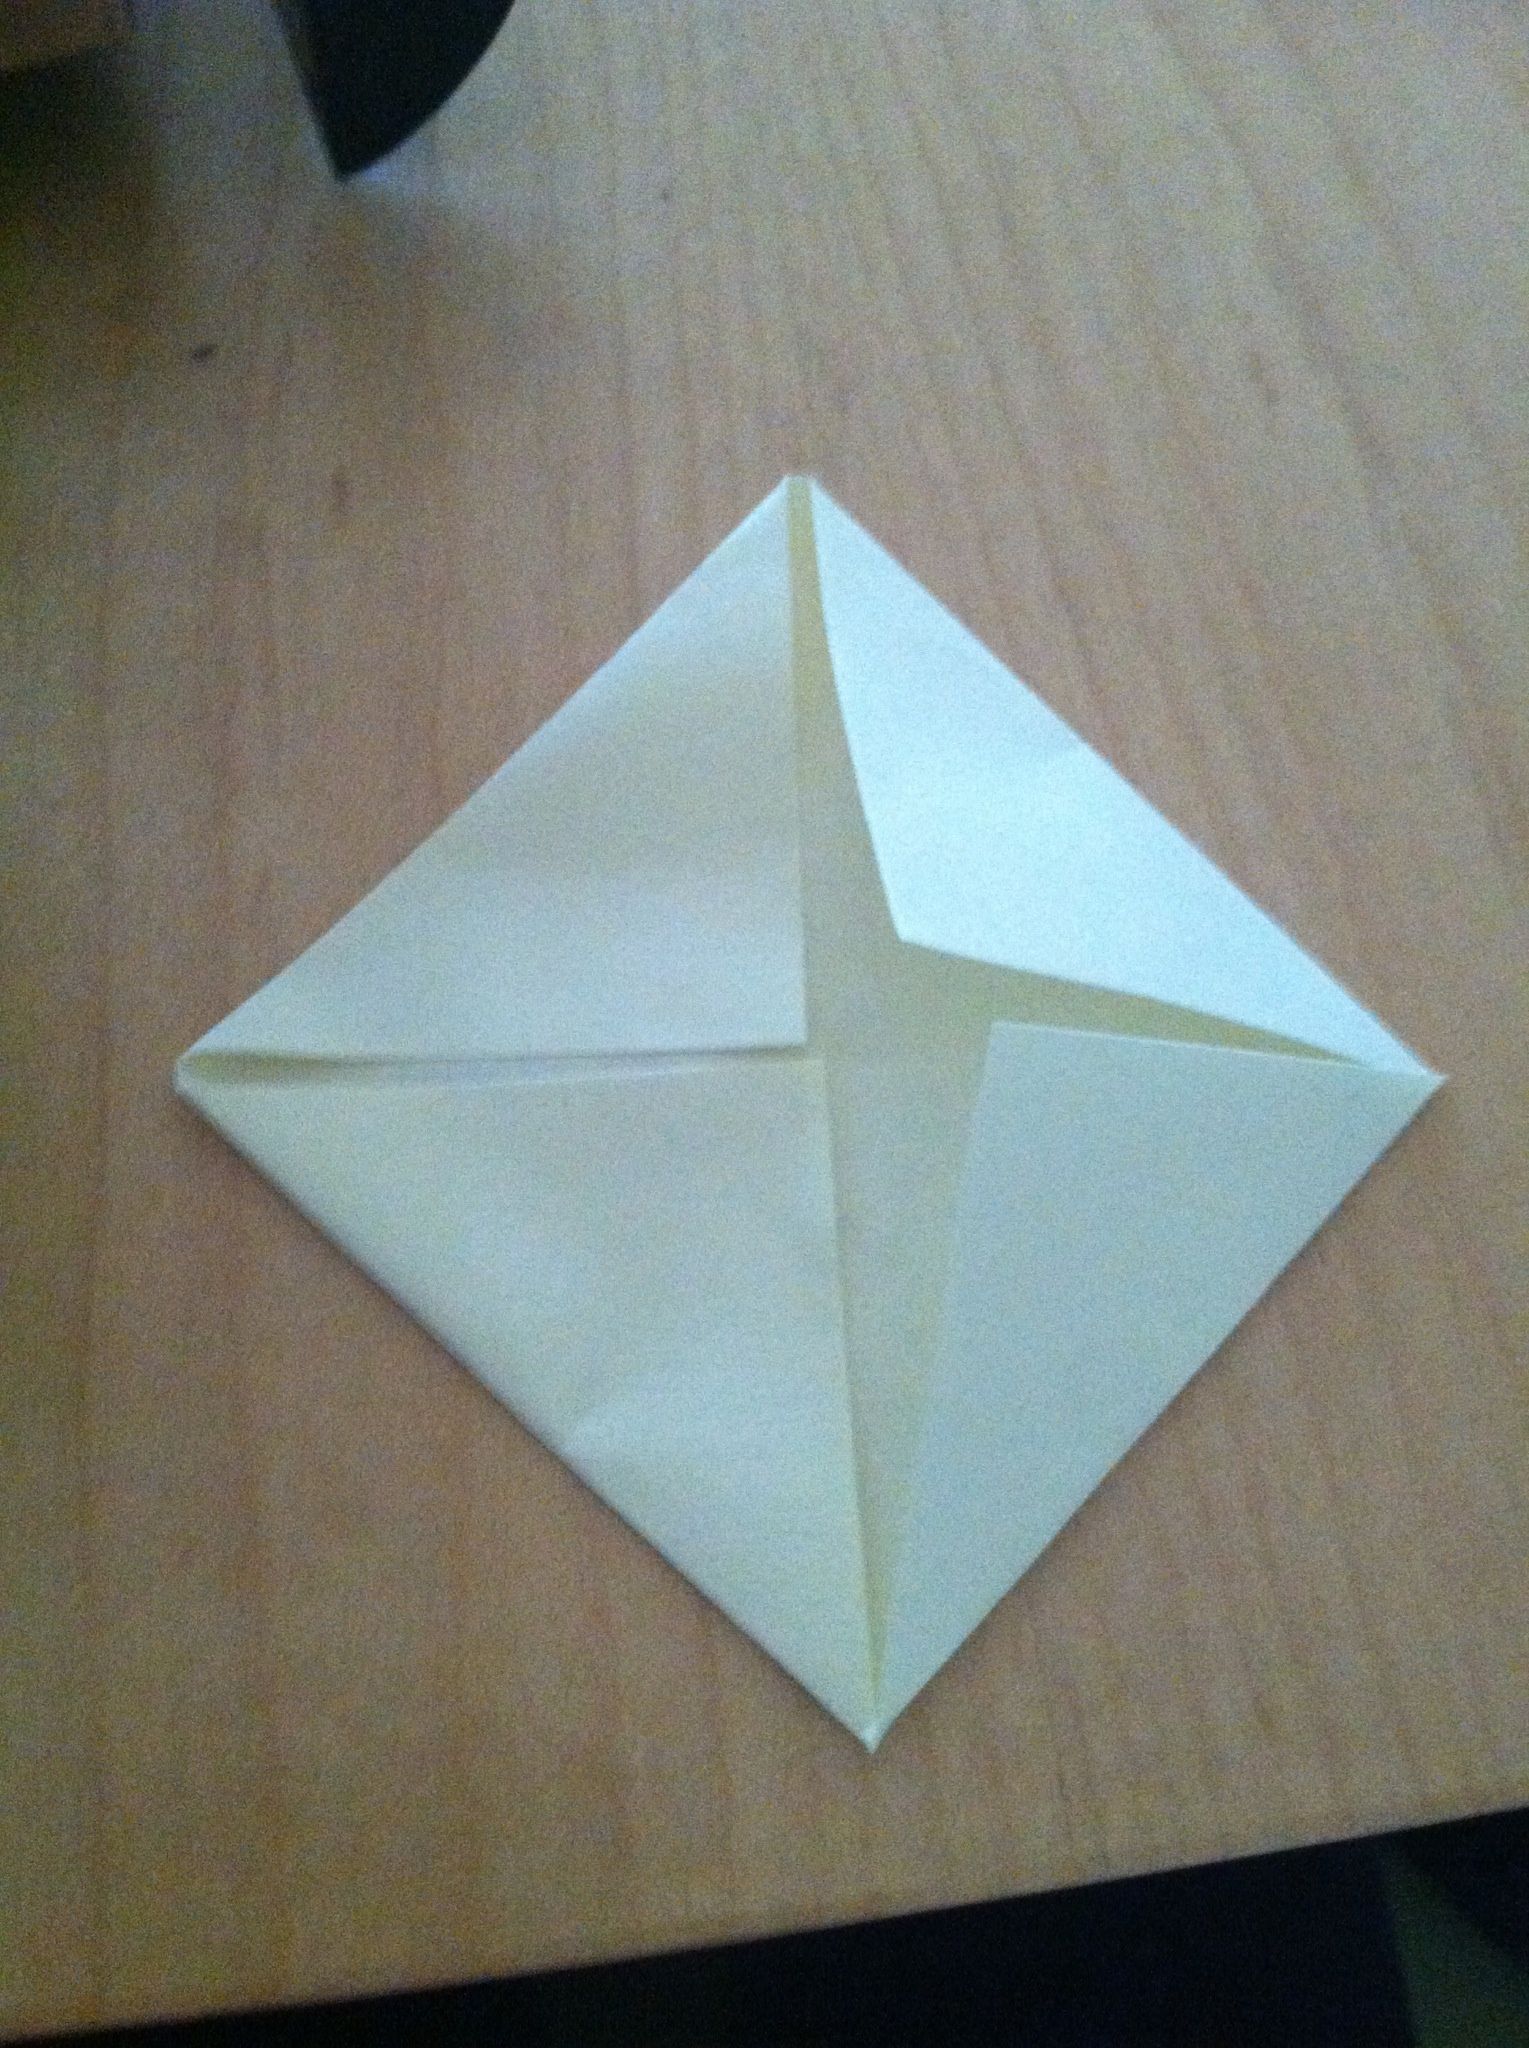 modular origami ninja star folding instructions